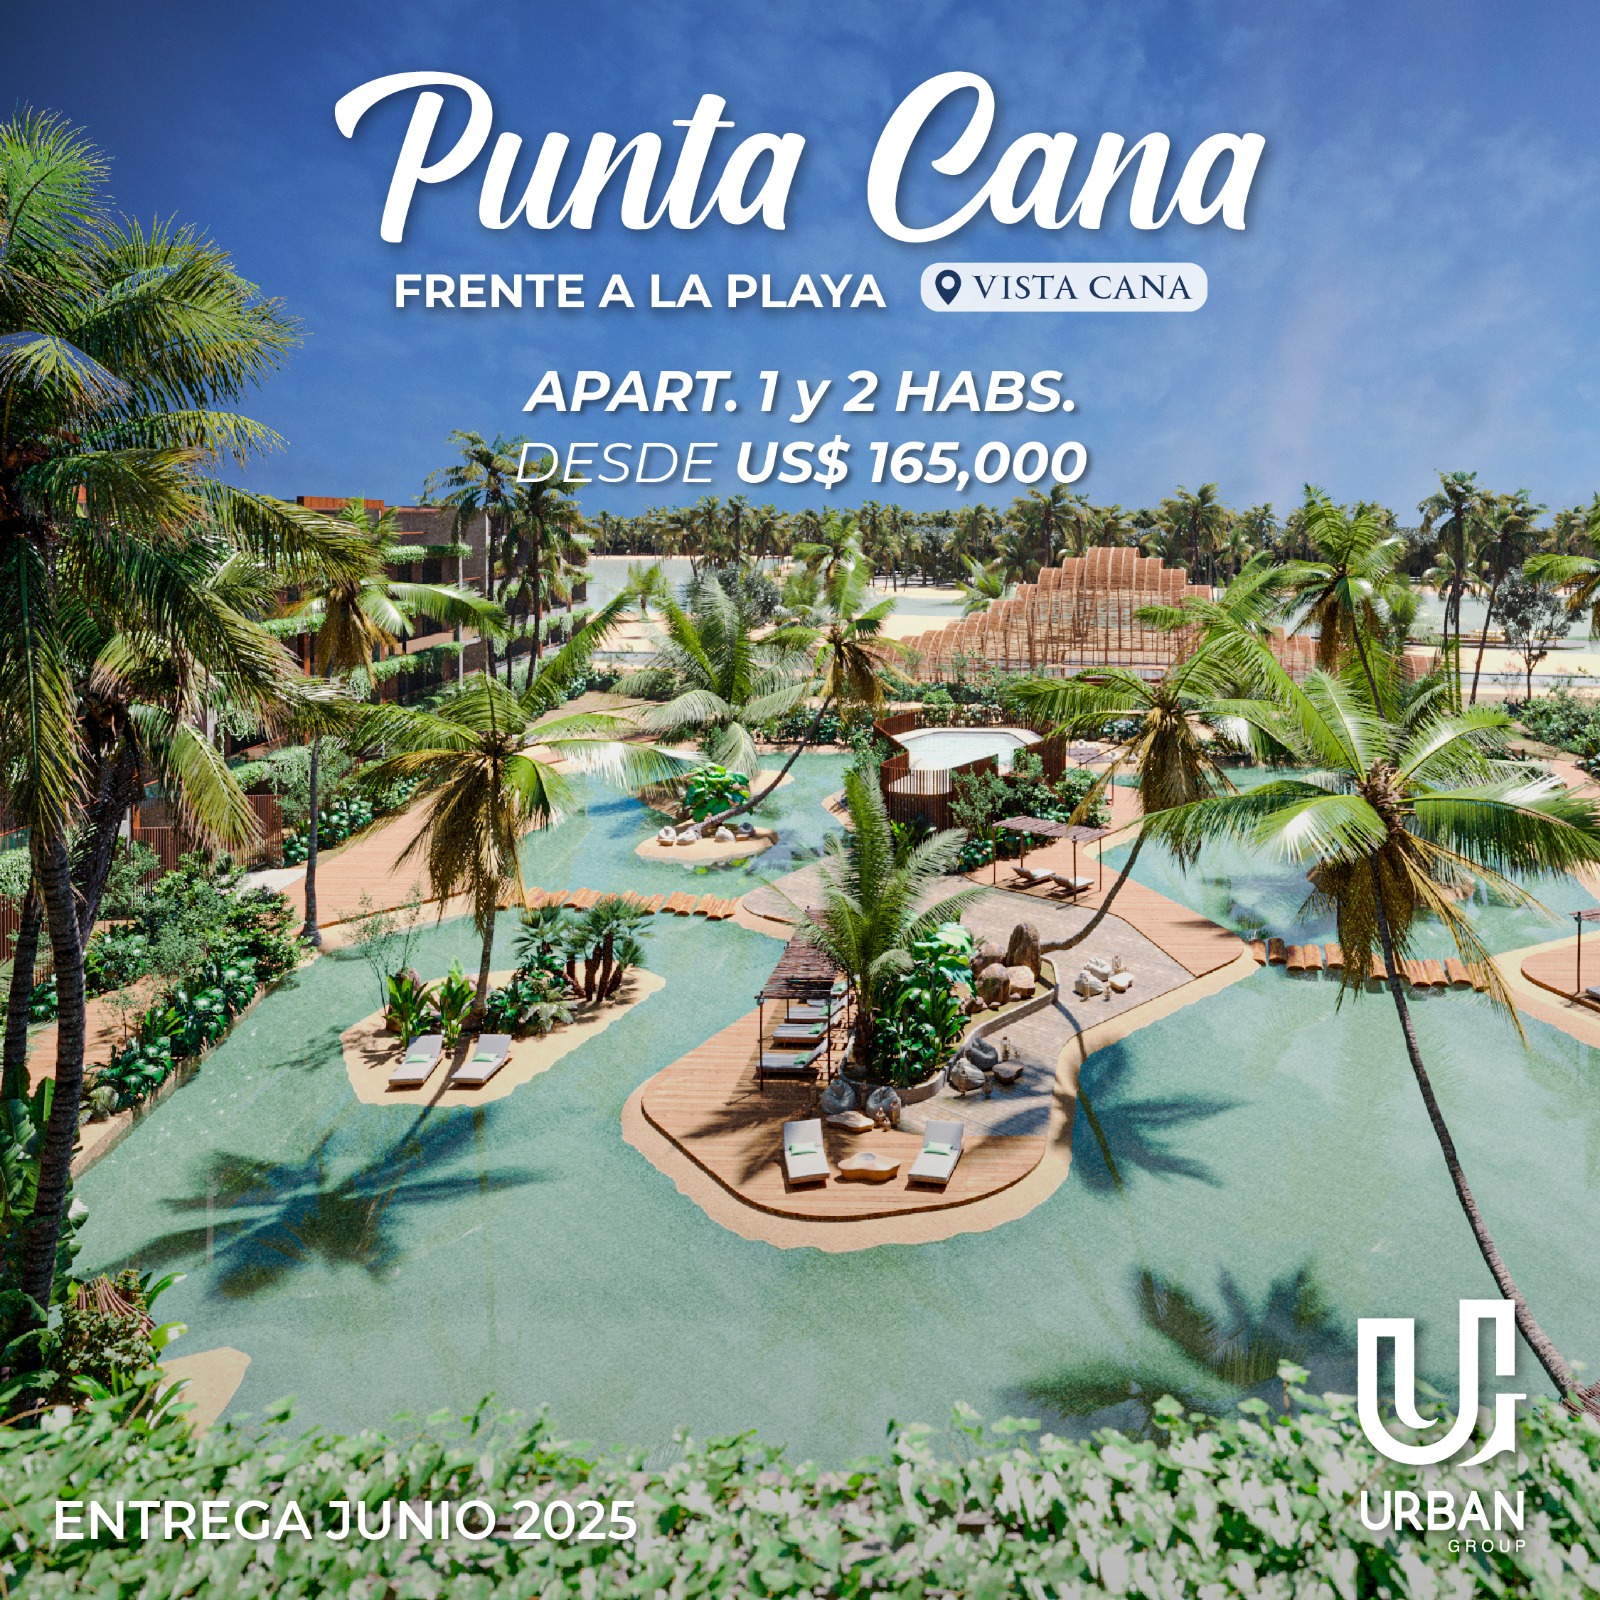 Apartamentos de 1, 2 y 3 Habitaciones Frente a la Playa en Punta Cana